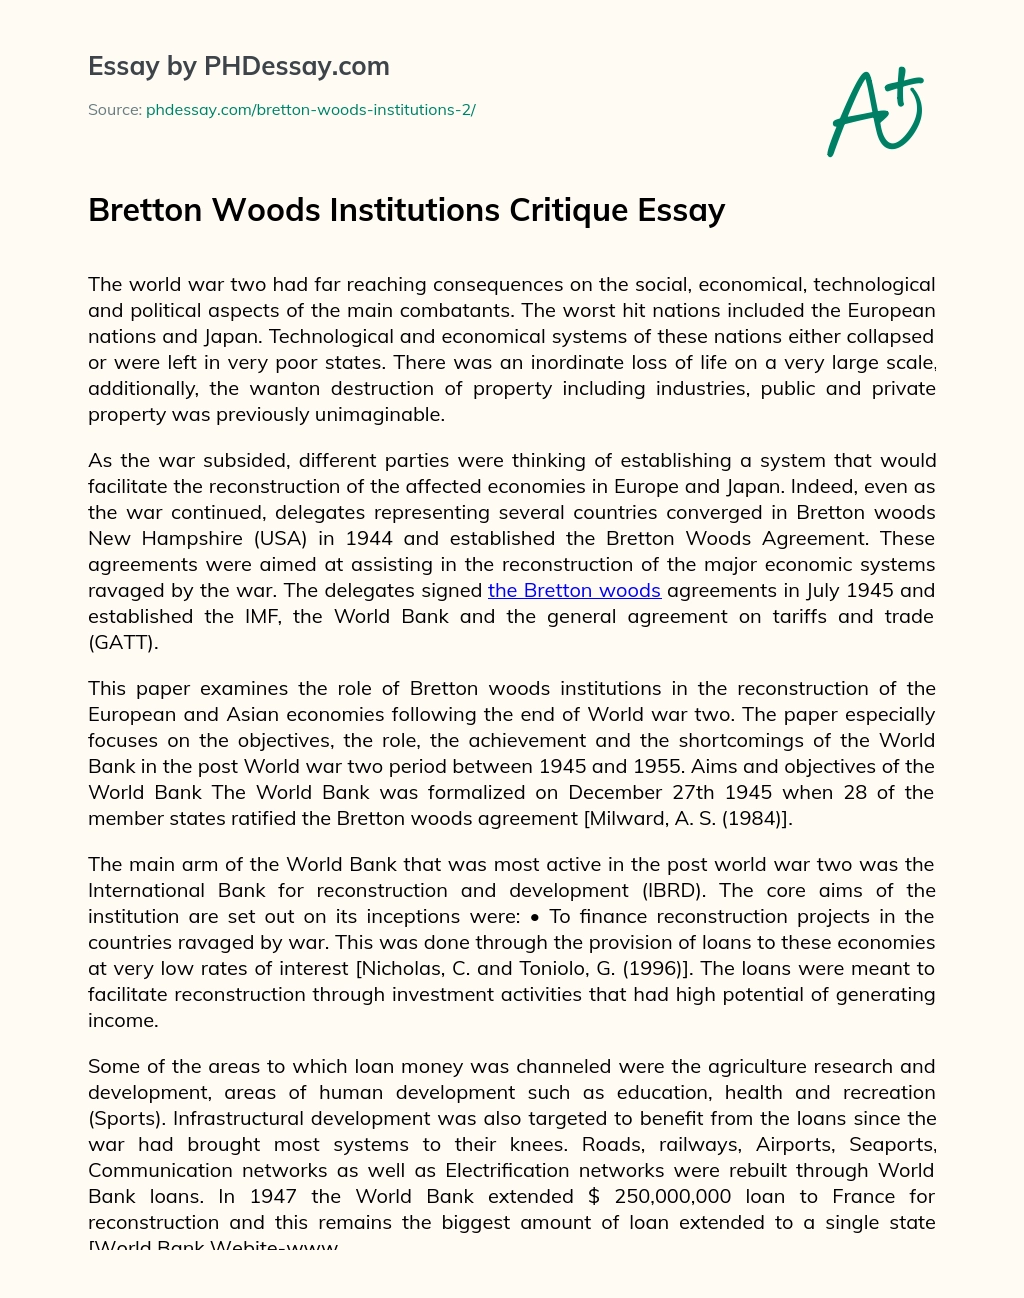 Bretton Woods Institutions Critique Essay essay